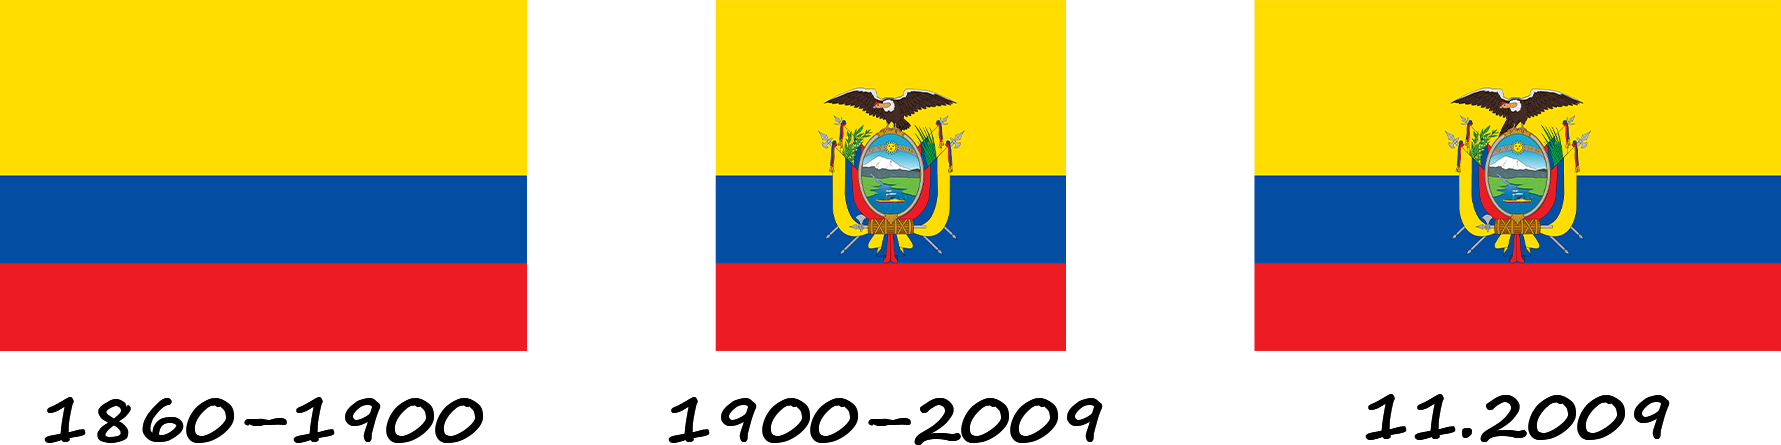 Histoire du drapeau de l'Équateur